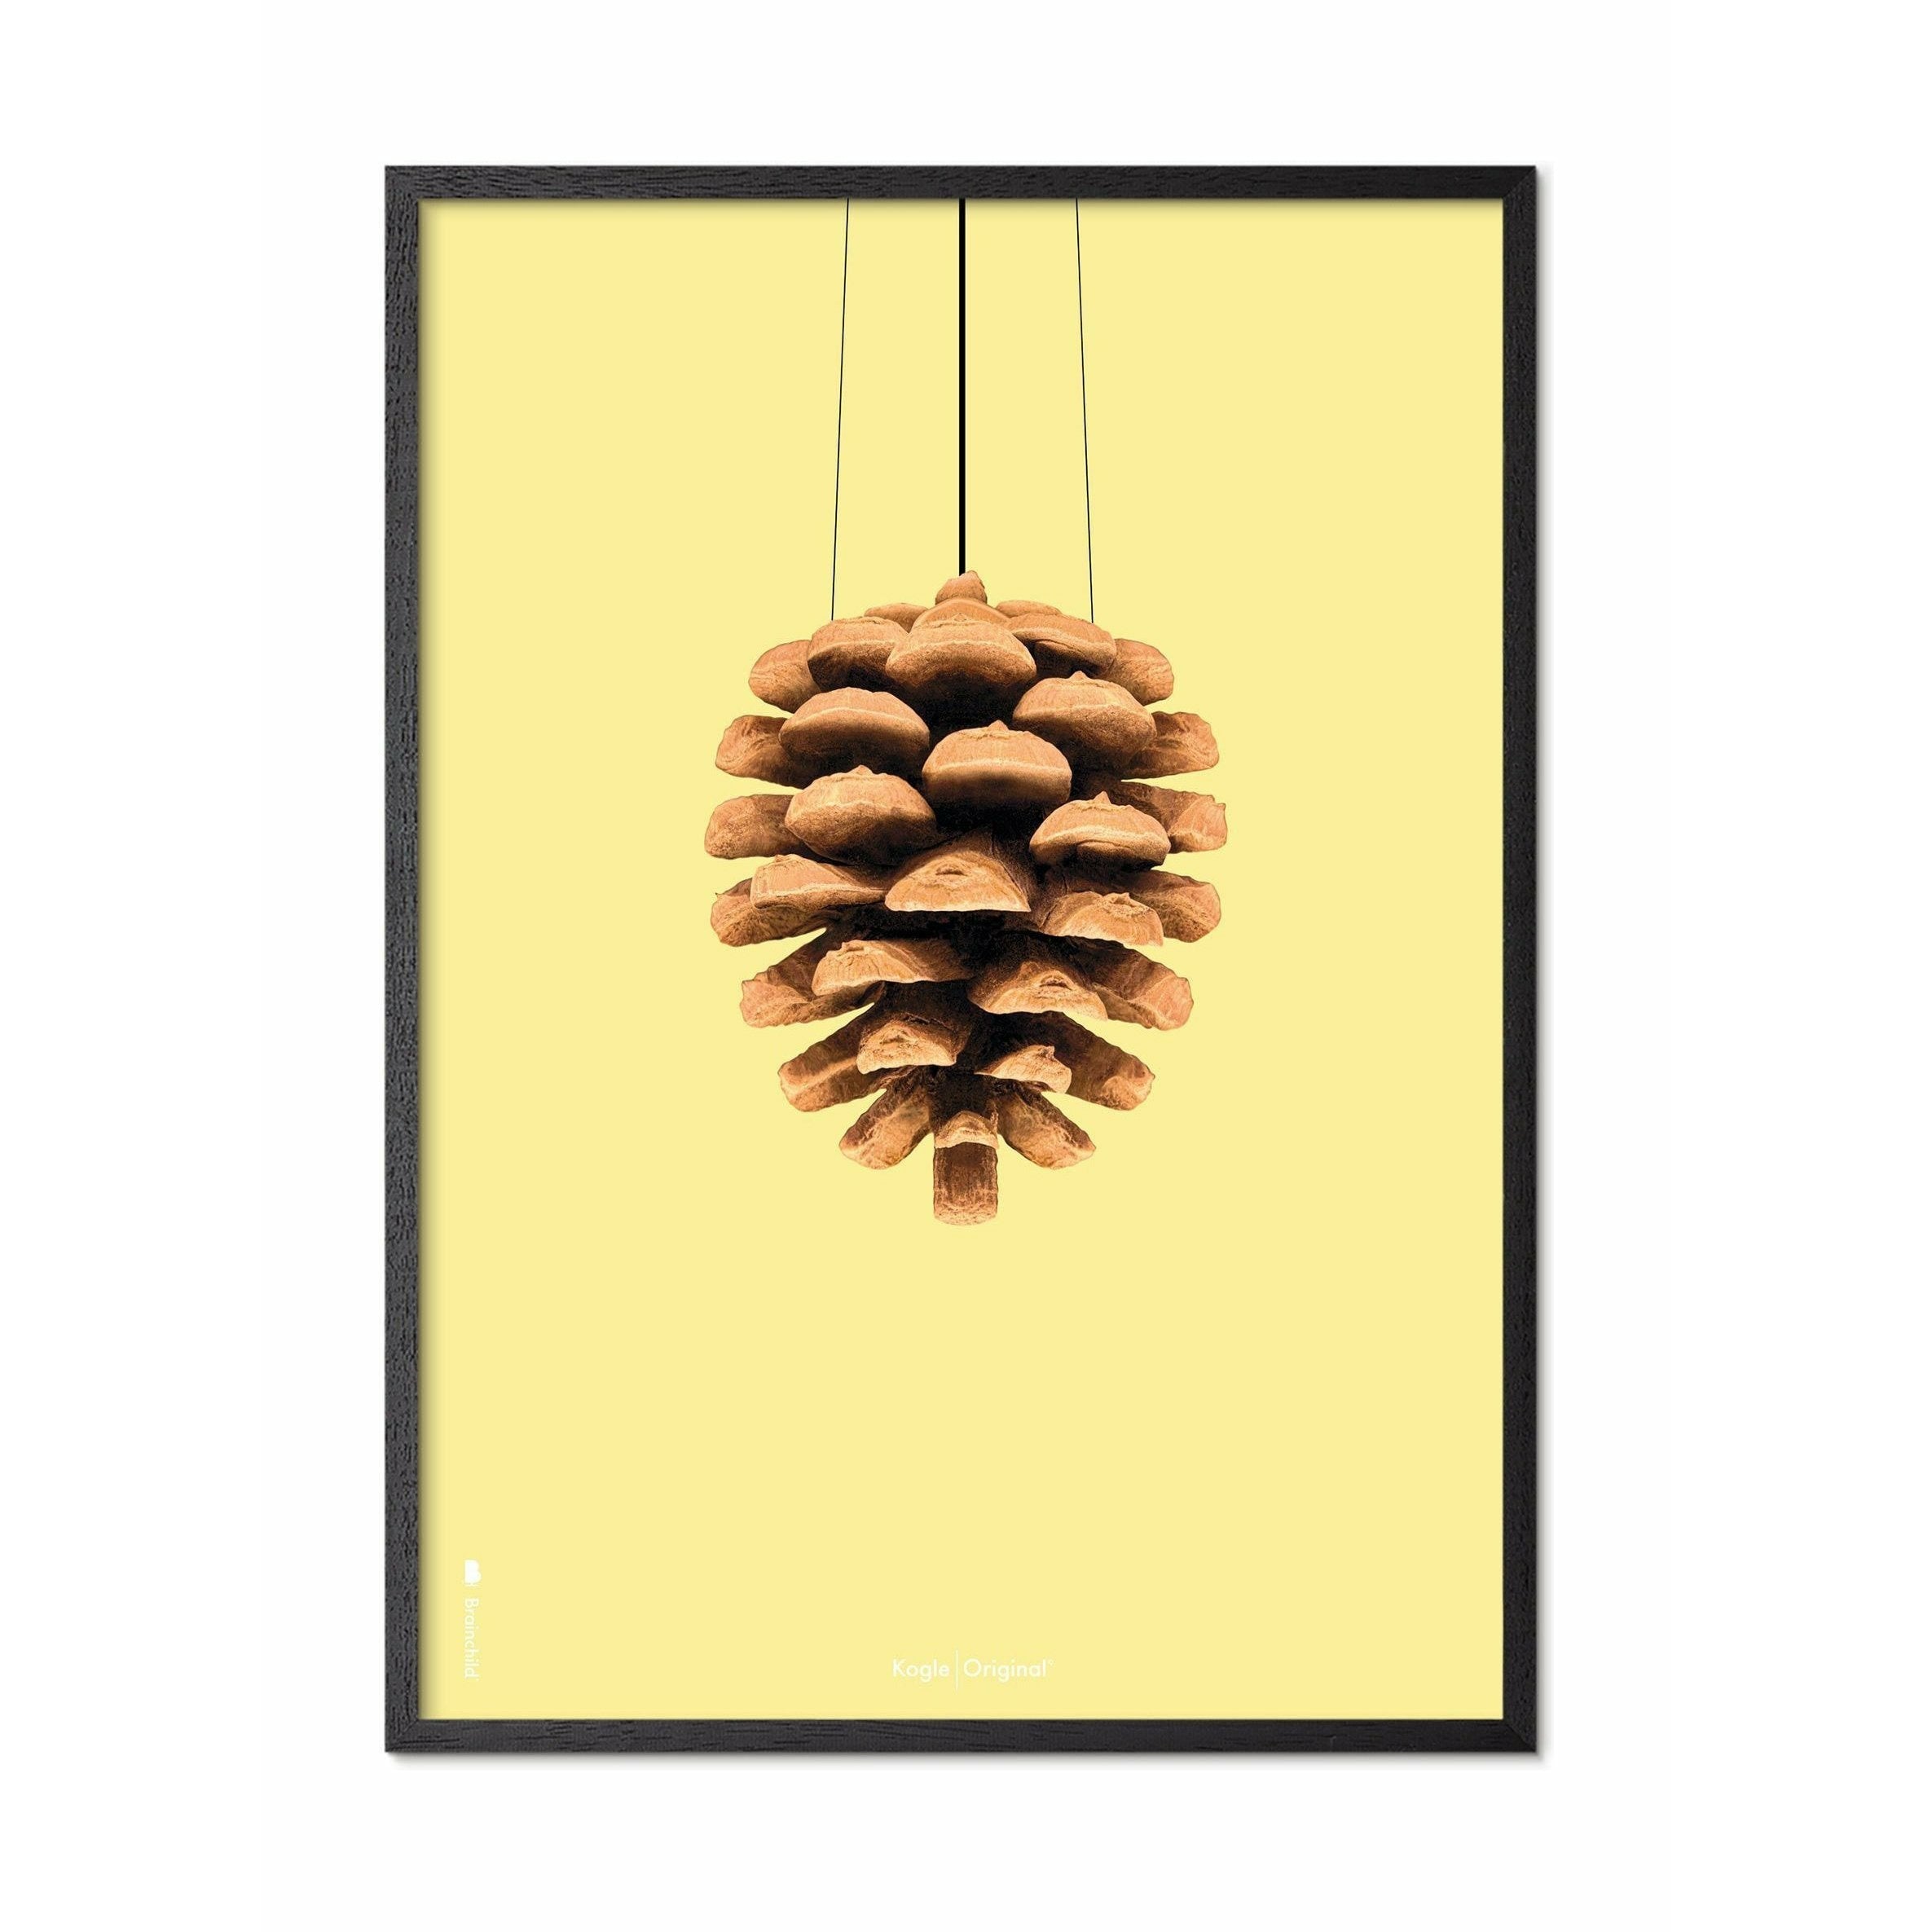 Póster clásico de cono de pino de creación, marco en madera lacada negra de 30x40 cm, fondo amarillo